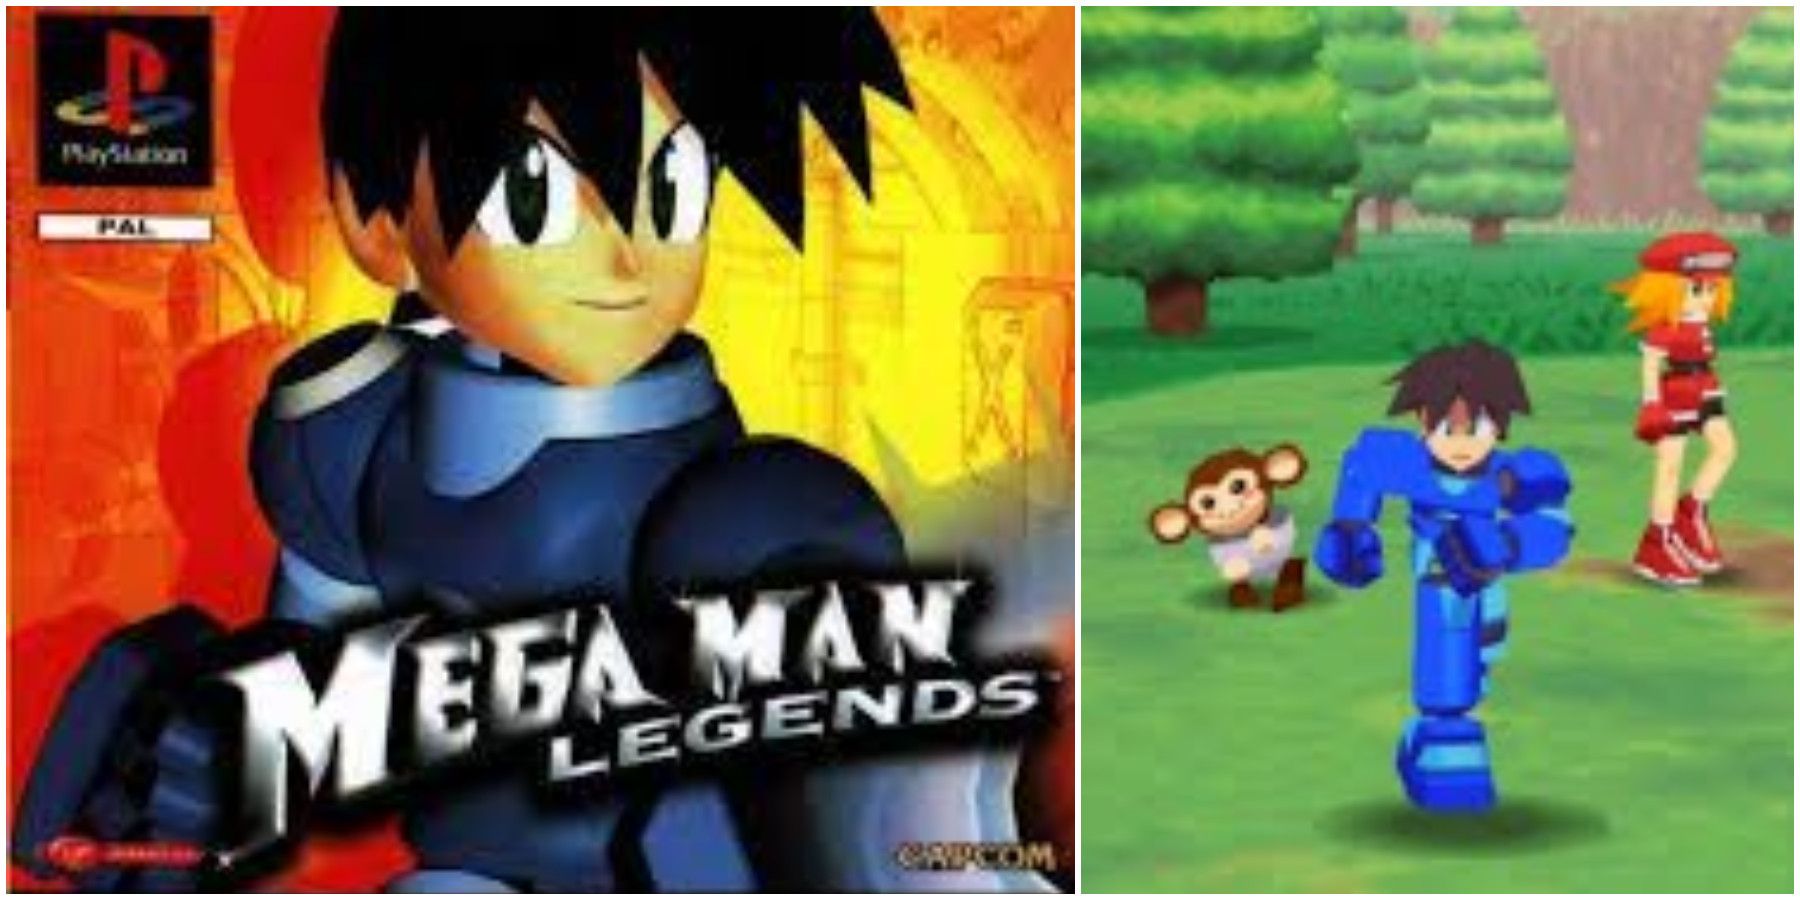 Mega Man Legends PlayStation 1 RPG